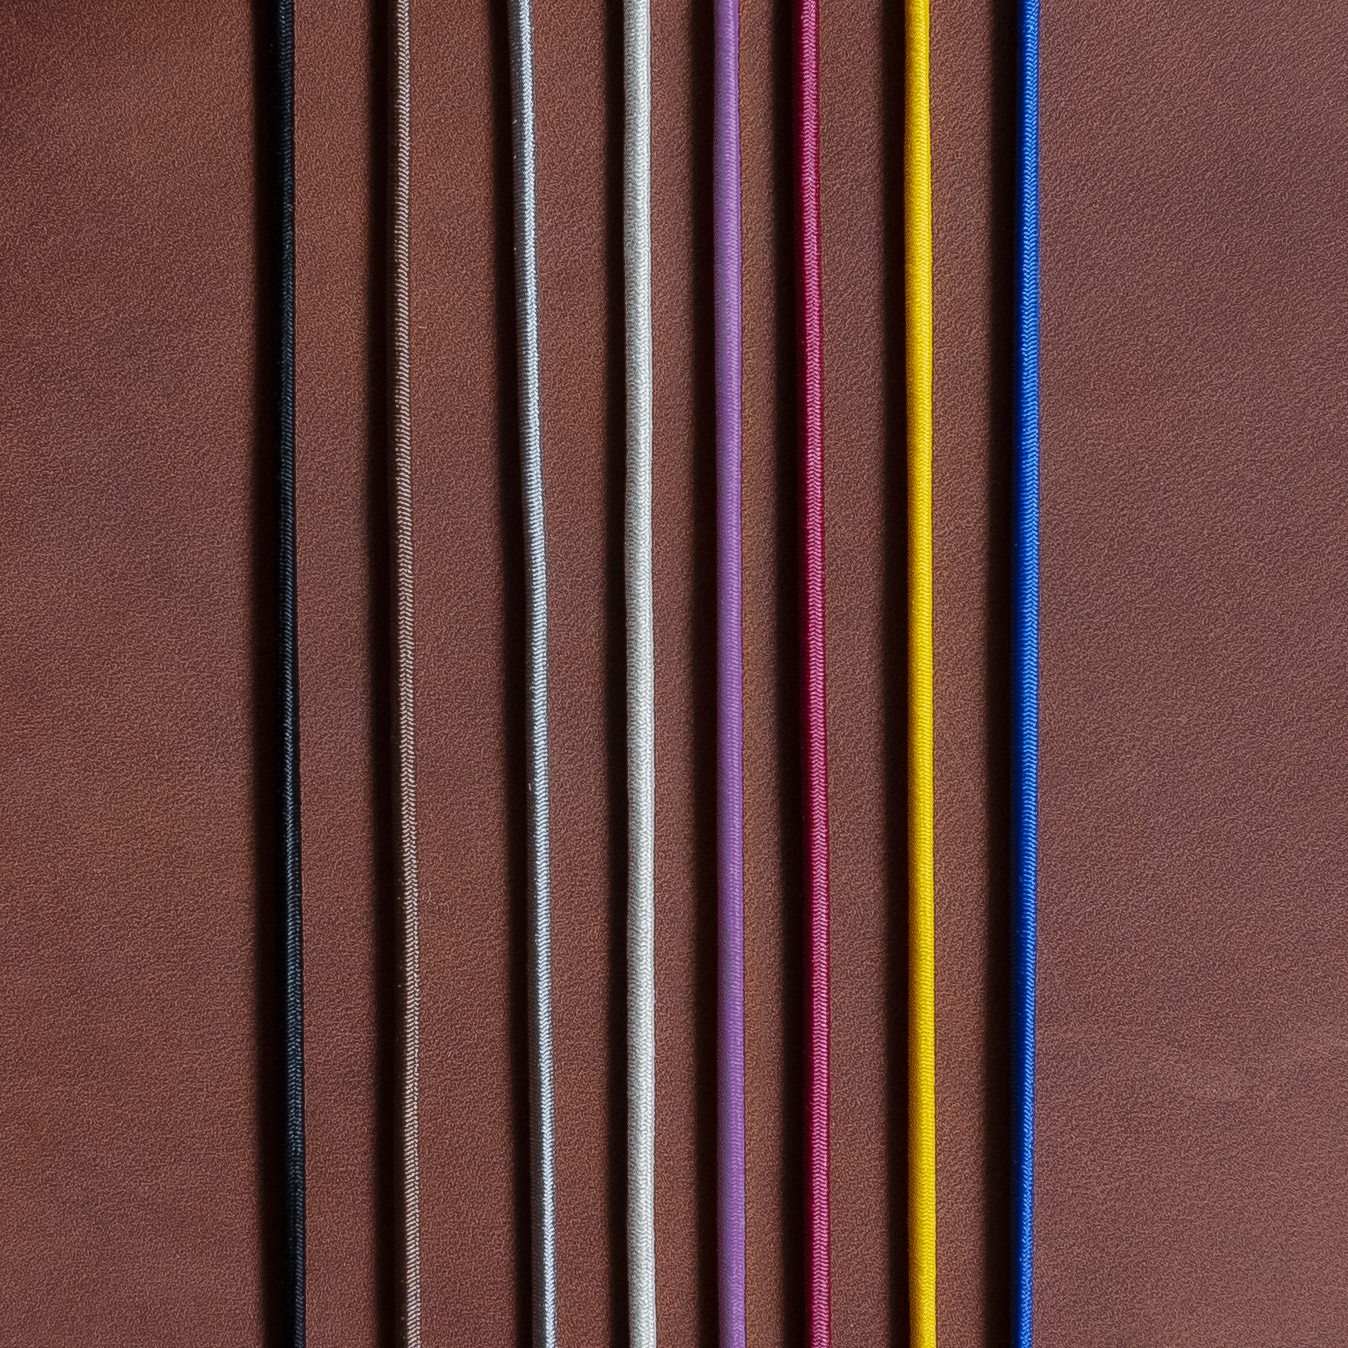 Gummibänder für Notizbuchhüllen in den Farben Schwarz, Braun, Grau, Creme, Rot, Gelb und Blau auf dunkelbraunem Naturleder.